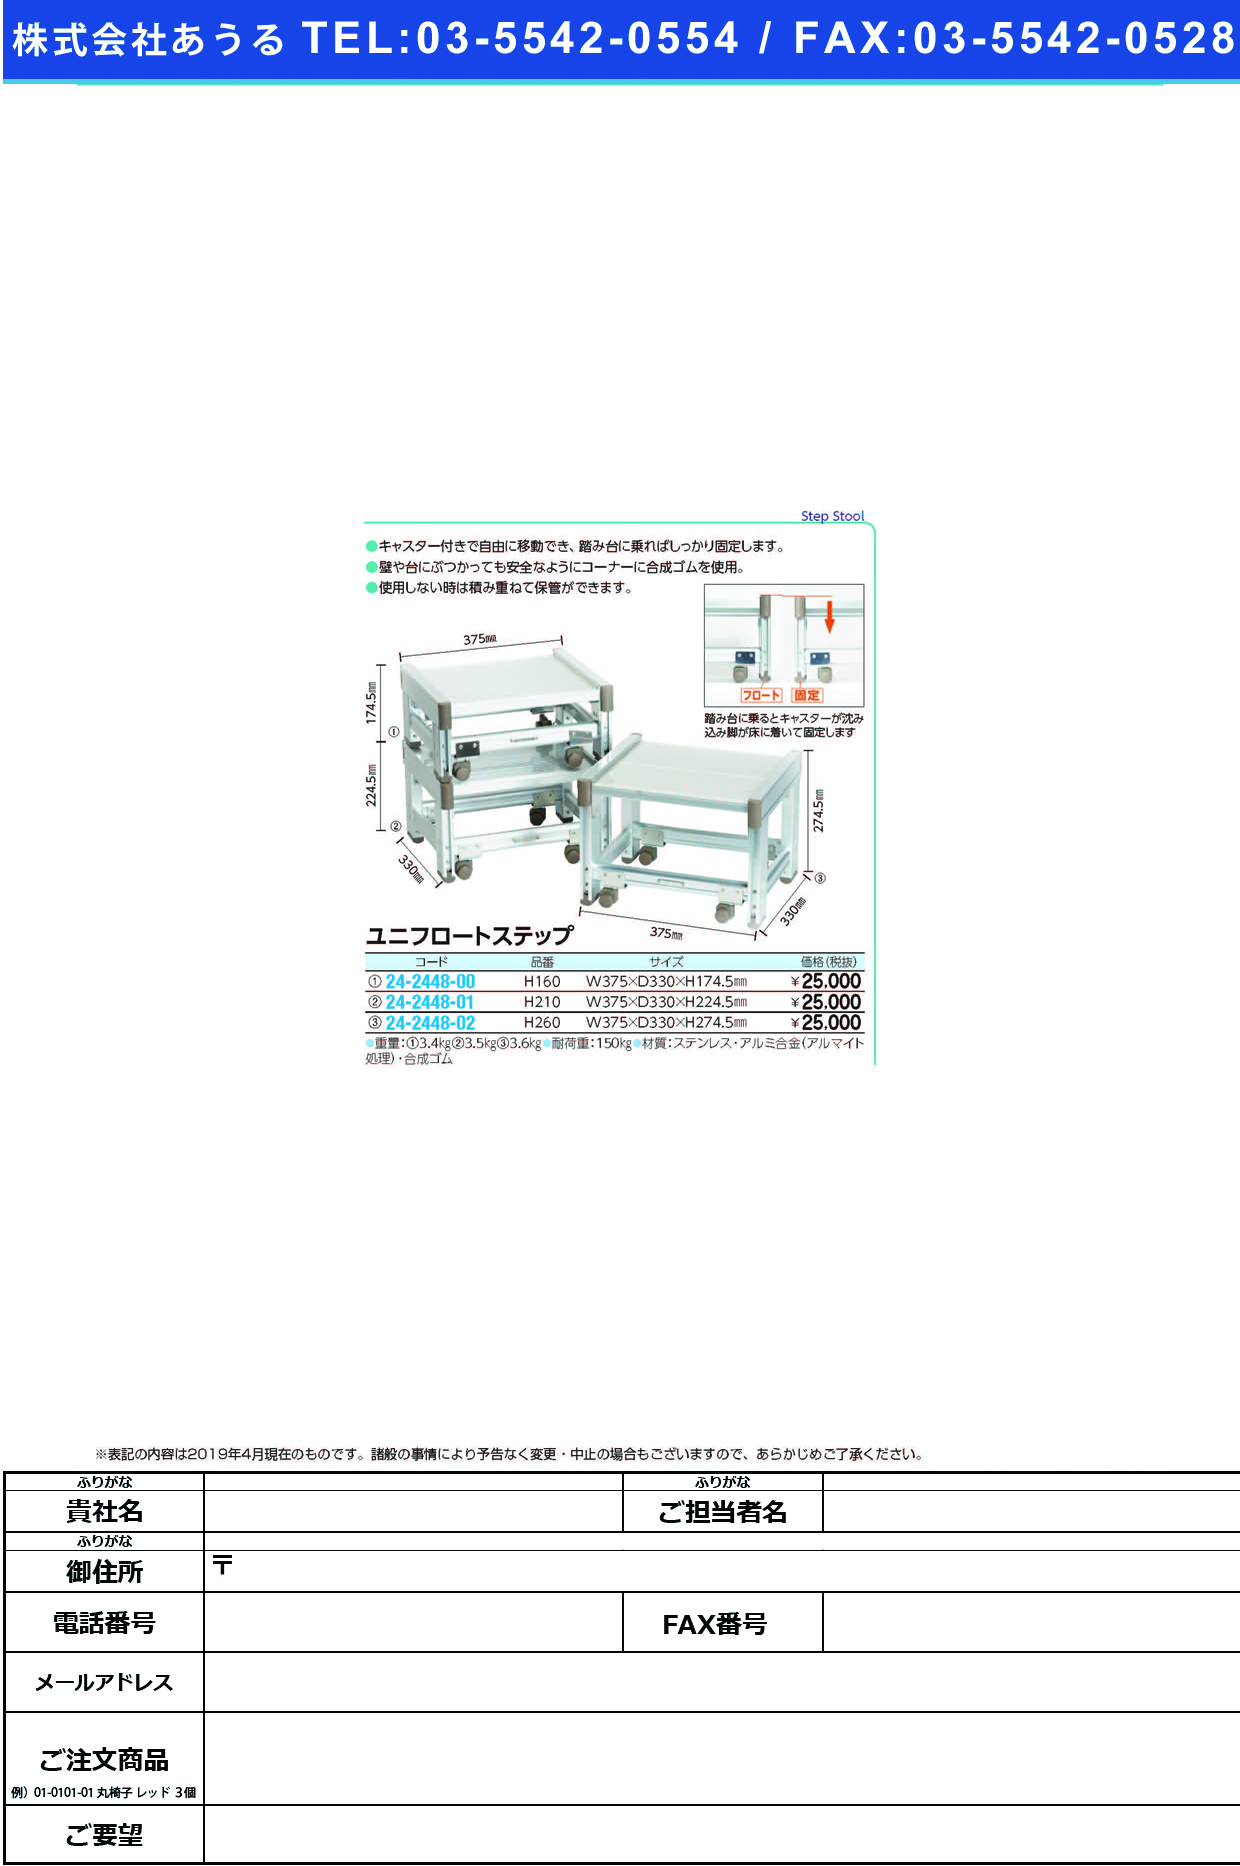 (24-2448-00)ユニフロートステップ H160 ﾕﾆﾌﾛｰﾄｽﾃｯﾌﾟ【1台単位】【2019年カタログ商品】